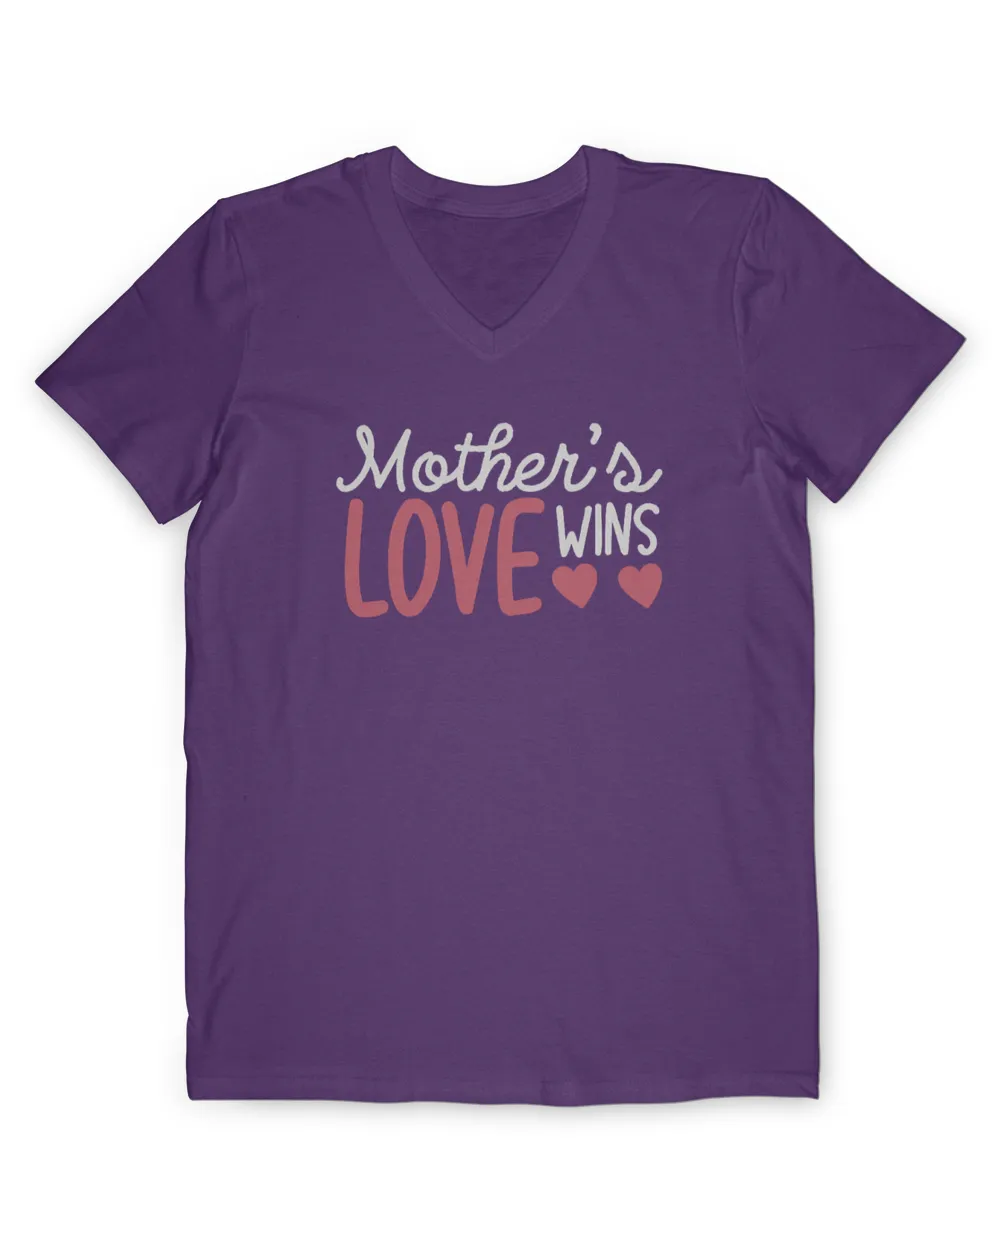 Mother's love wins t shirt